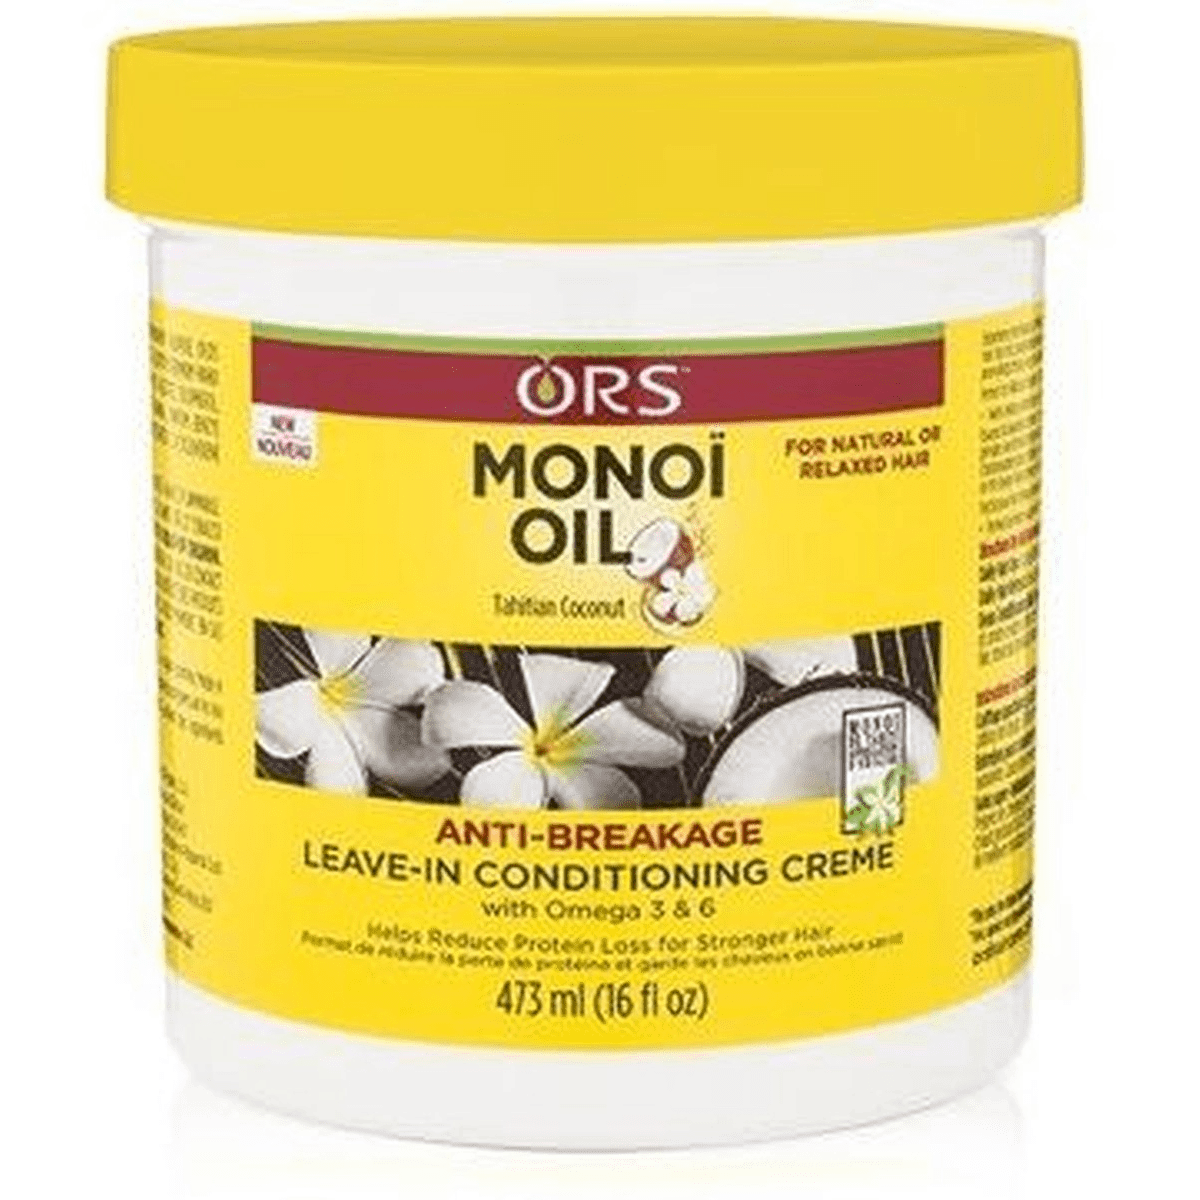 Ors Monoi Oil Anti-Breakage permit-in Conditioning Cream 473ml